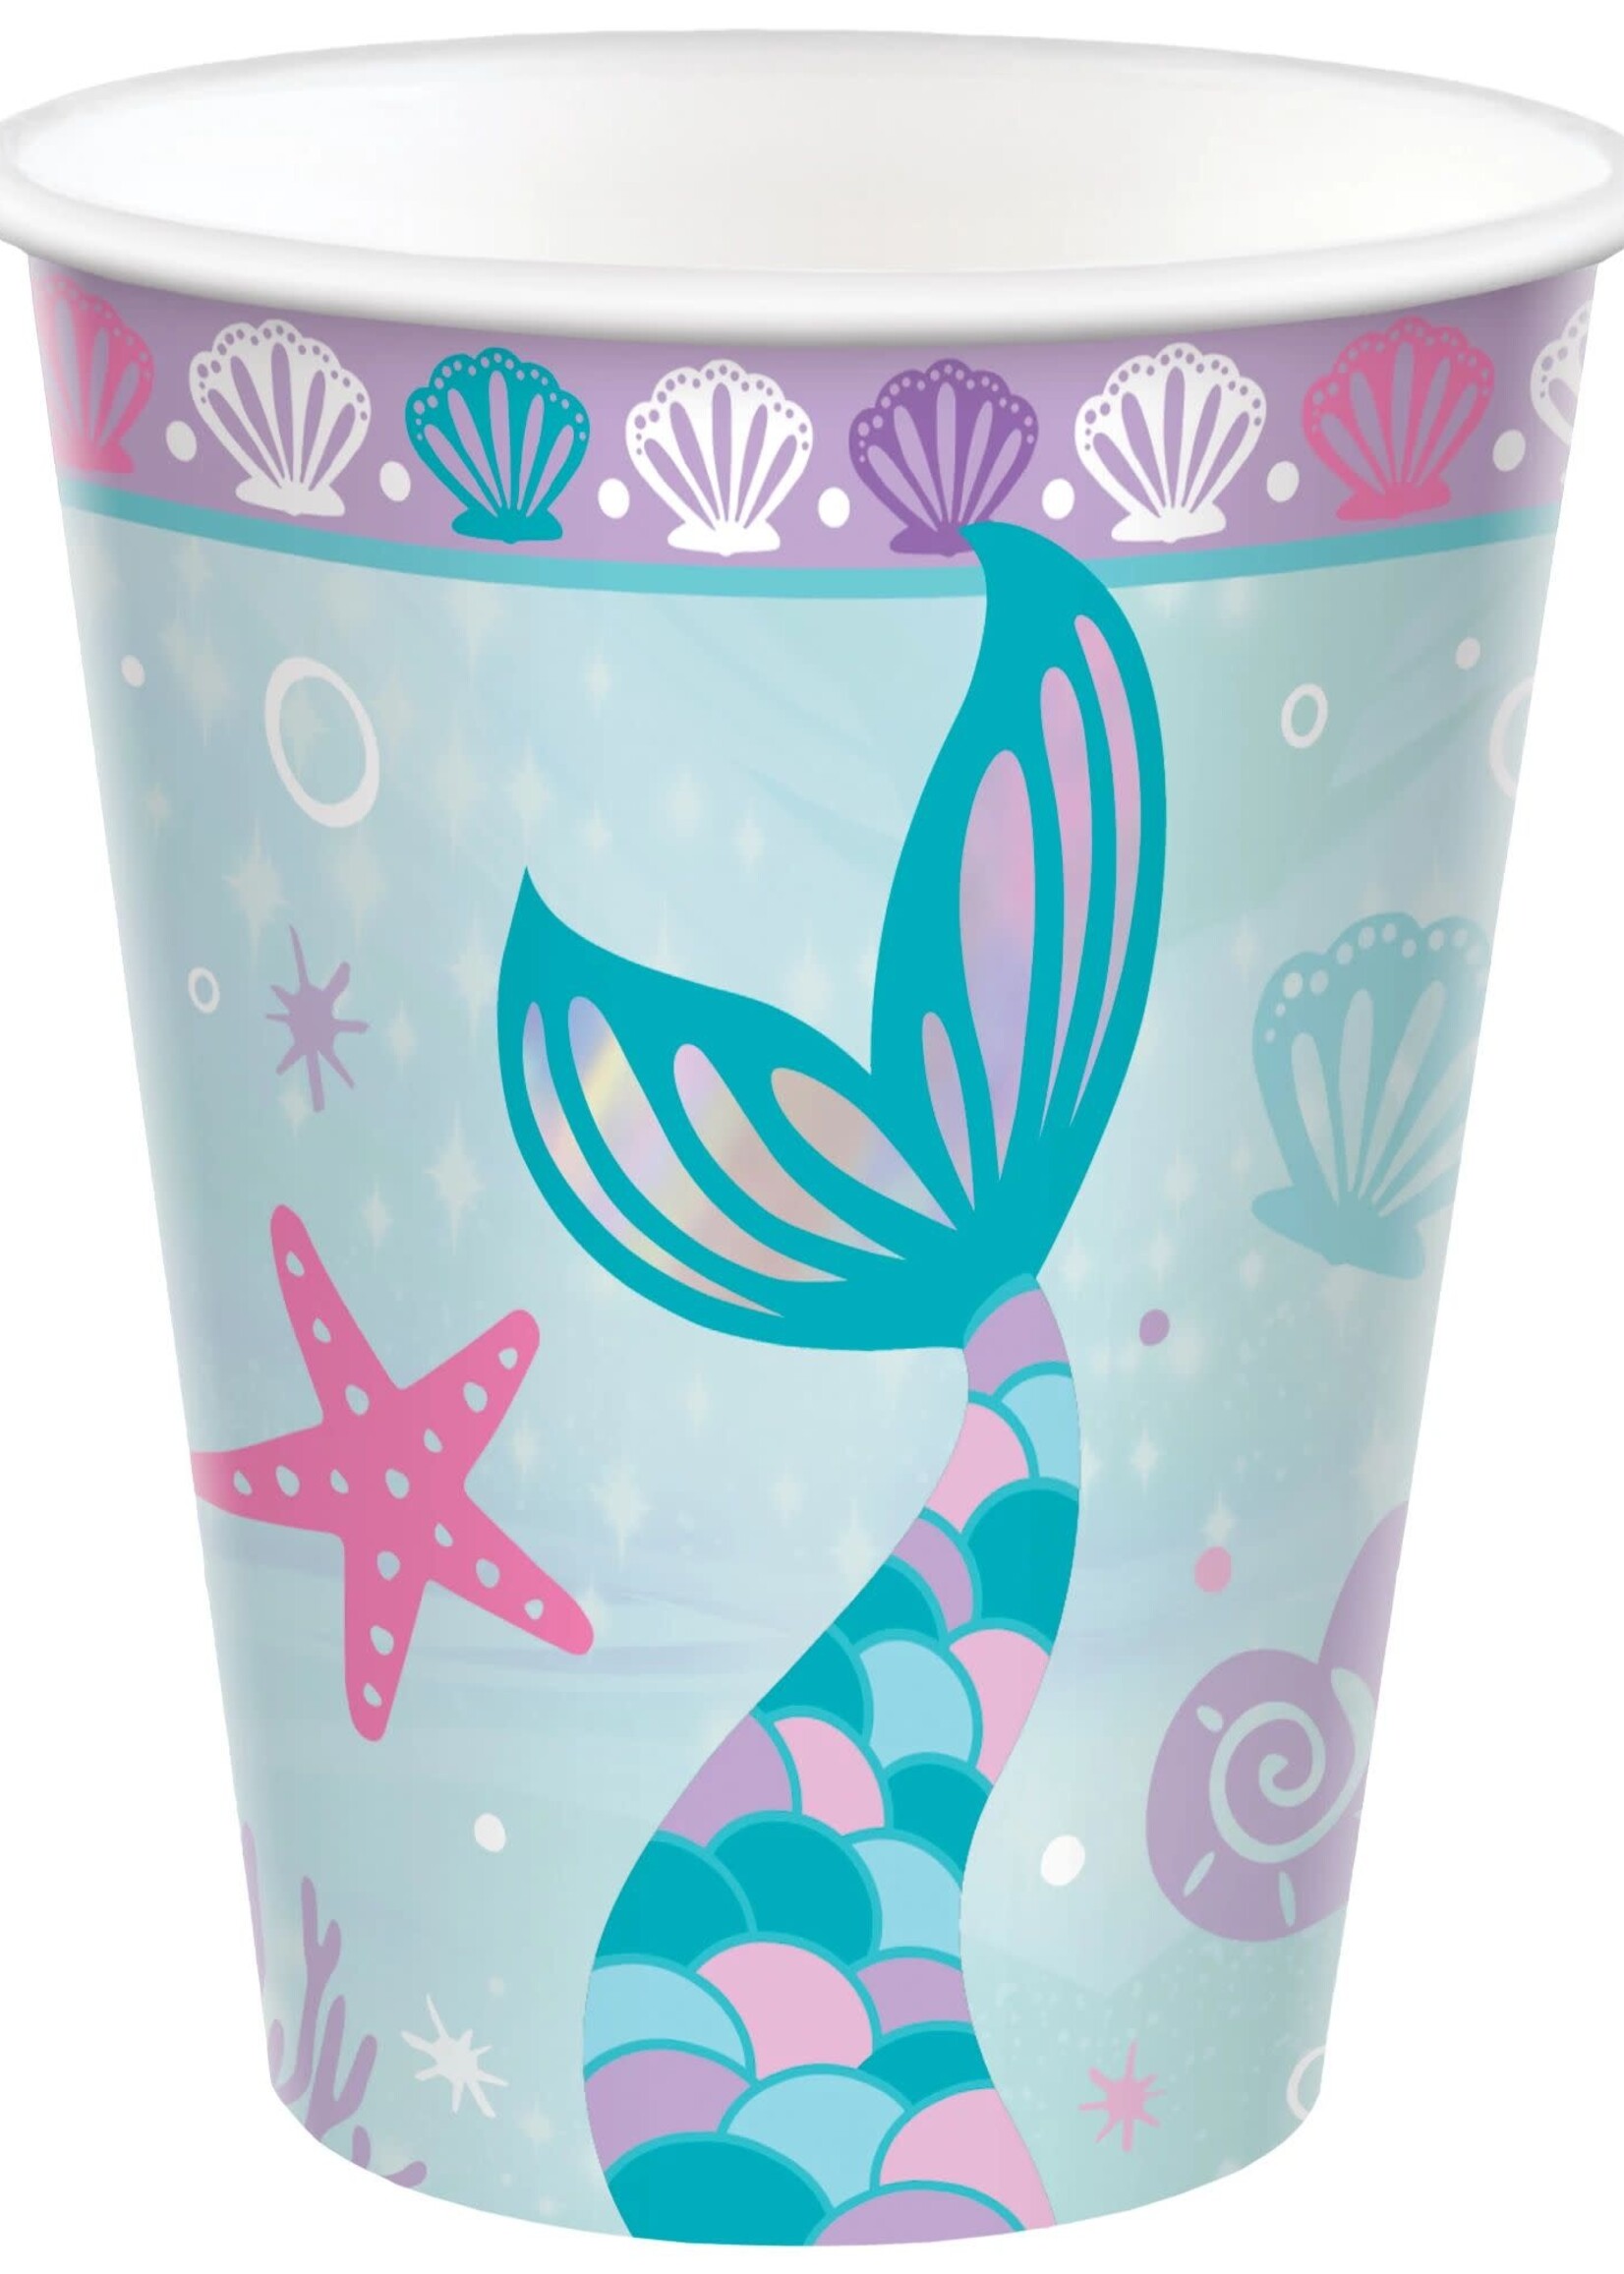 Shimmering Mermaids Cups, 9 oz.